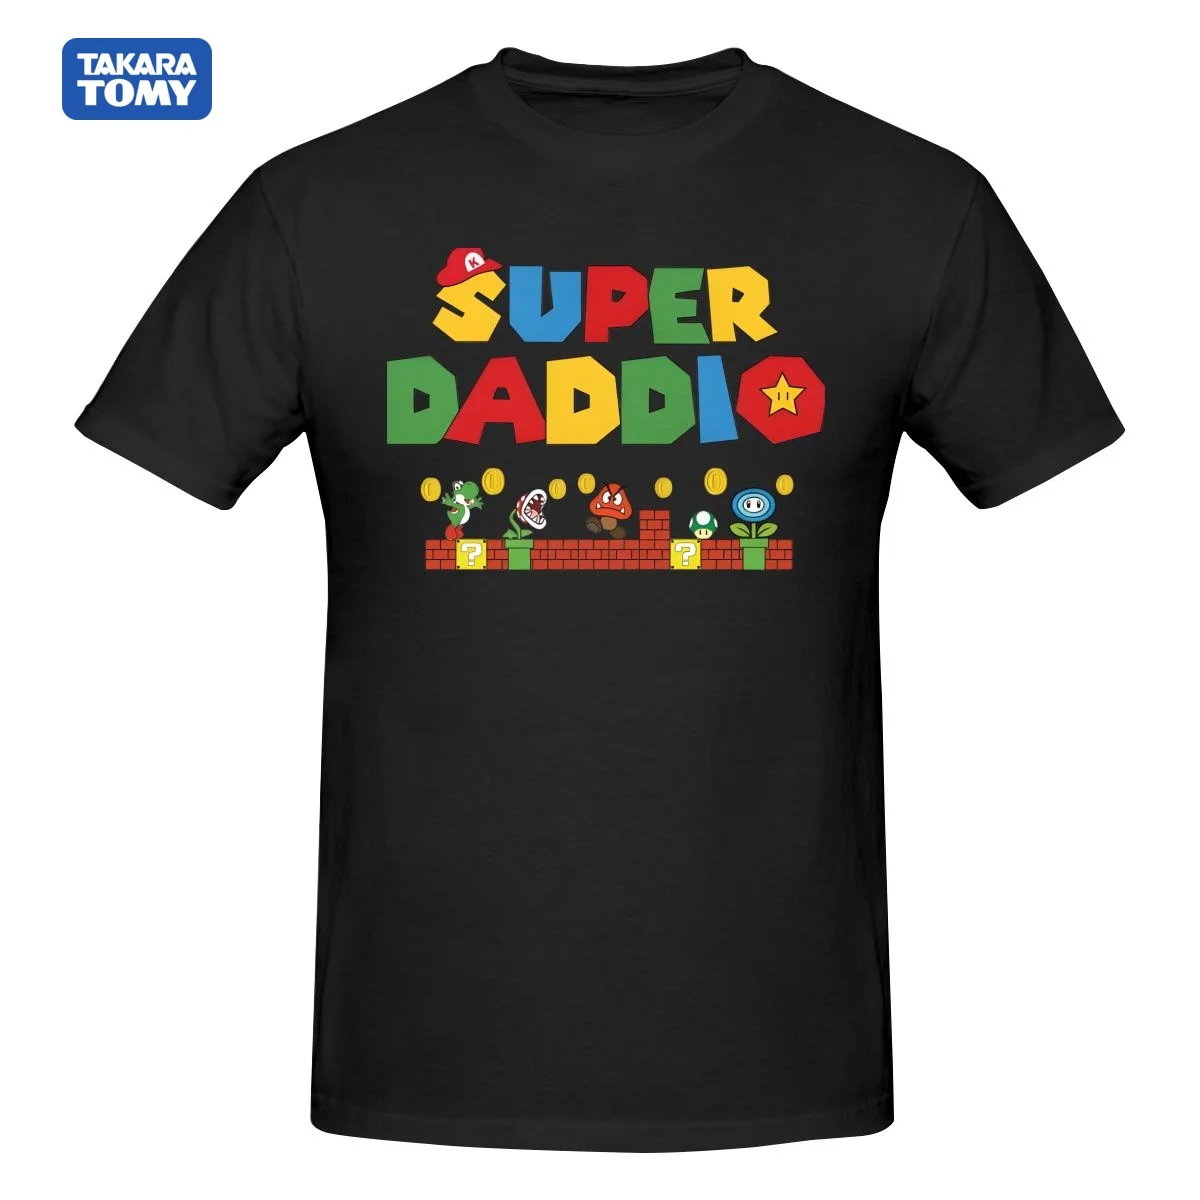 Super Daddio_, Mario футболкасы, Әке сыйлығы, Әке көйлегі, Әкелер күні, футболка, Сыйлық, Unisex ауыр мақта футболка брендтері Tee Top